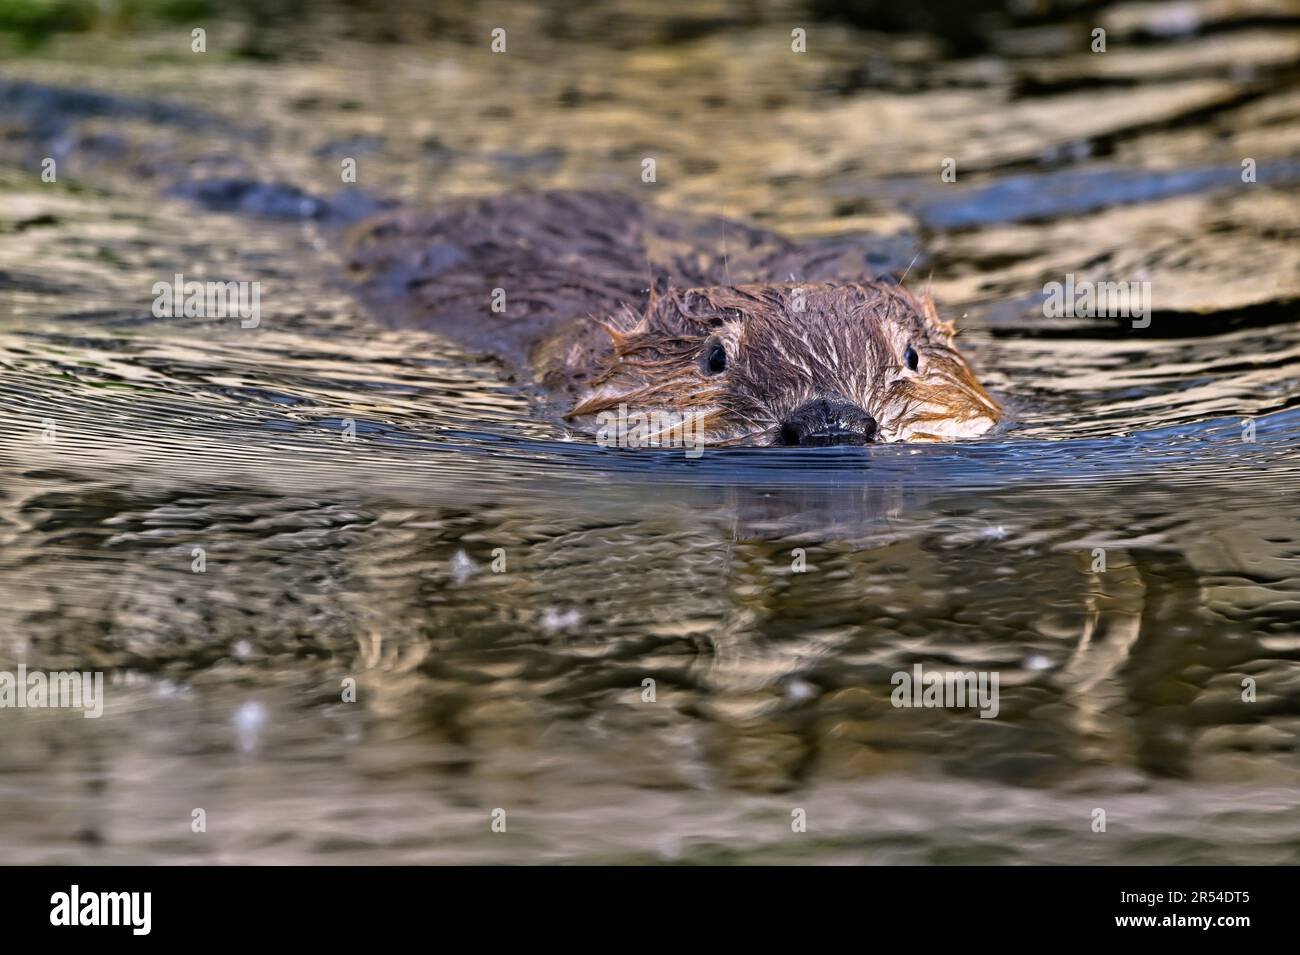 Image rapprochée d'un castor sauvage, Castor canadensis, nageant dans la lumière réfléchissante de son étang de castors. Banque D'Images